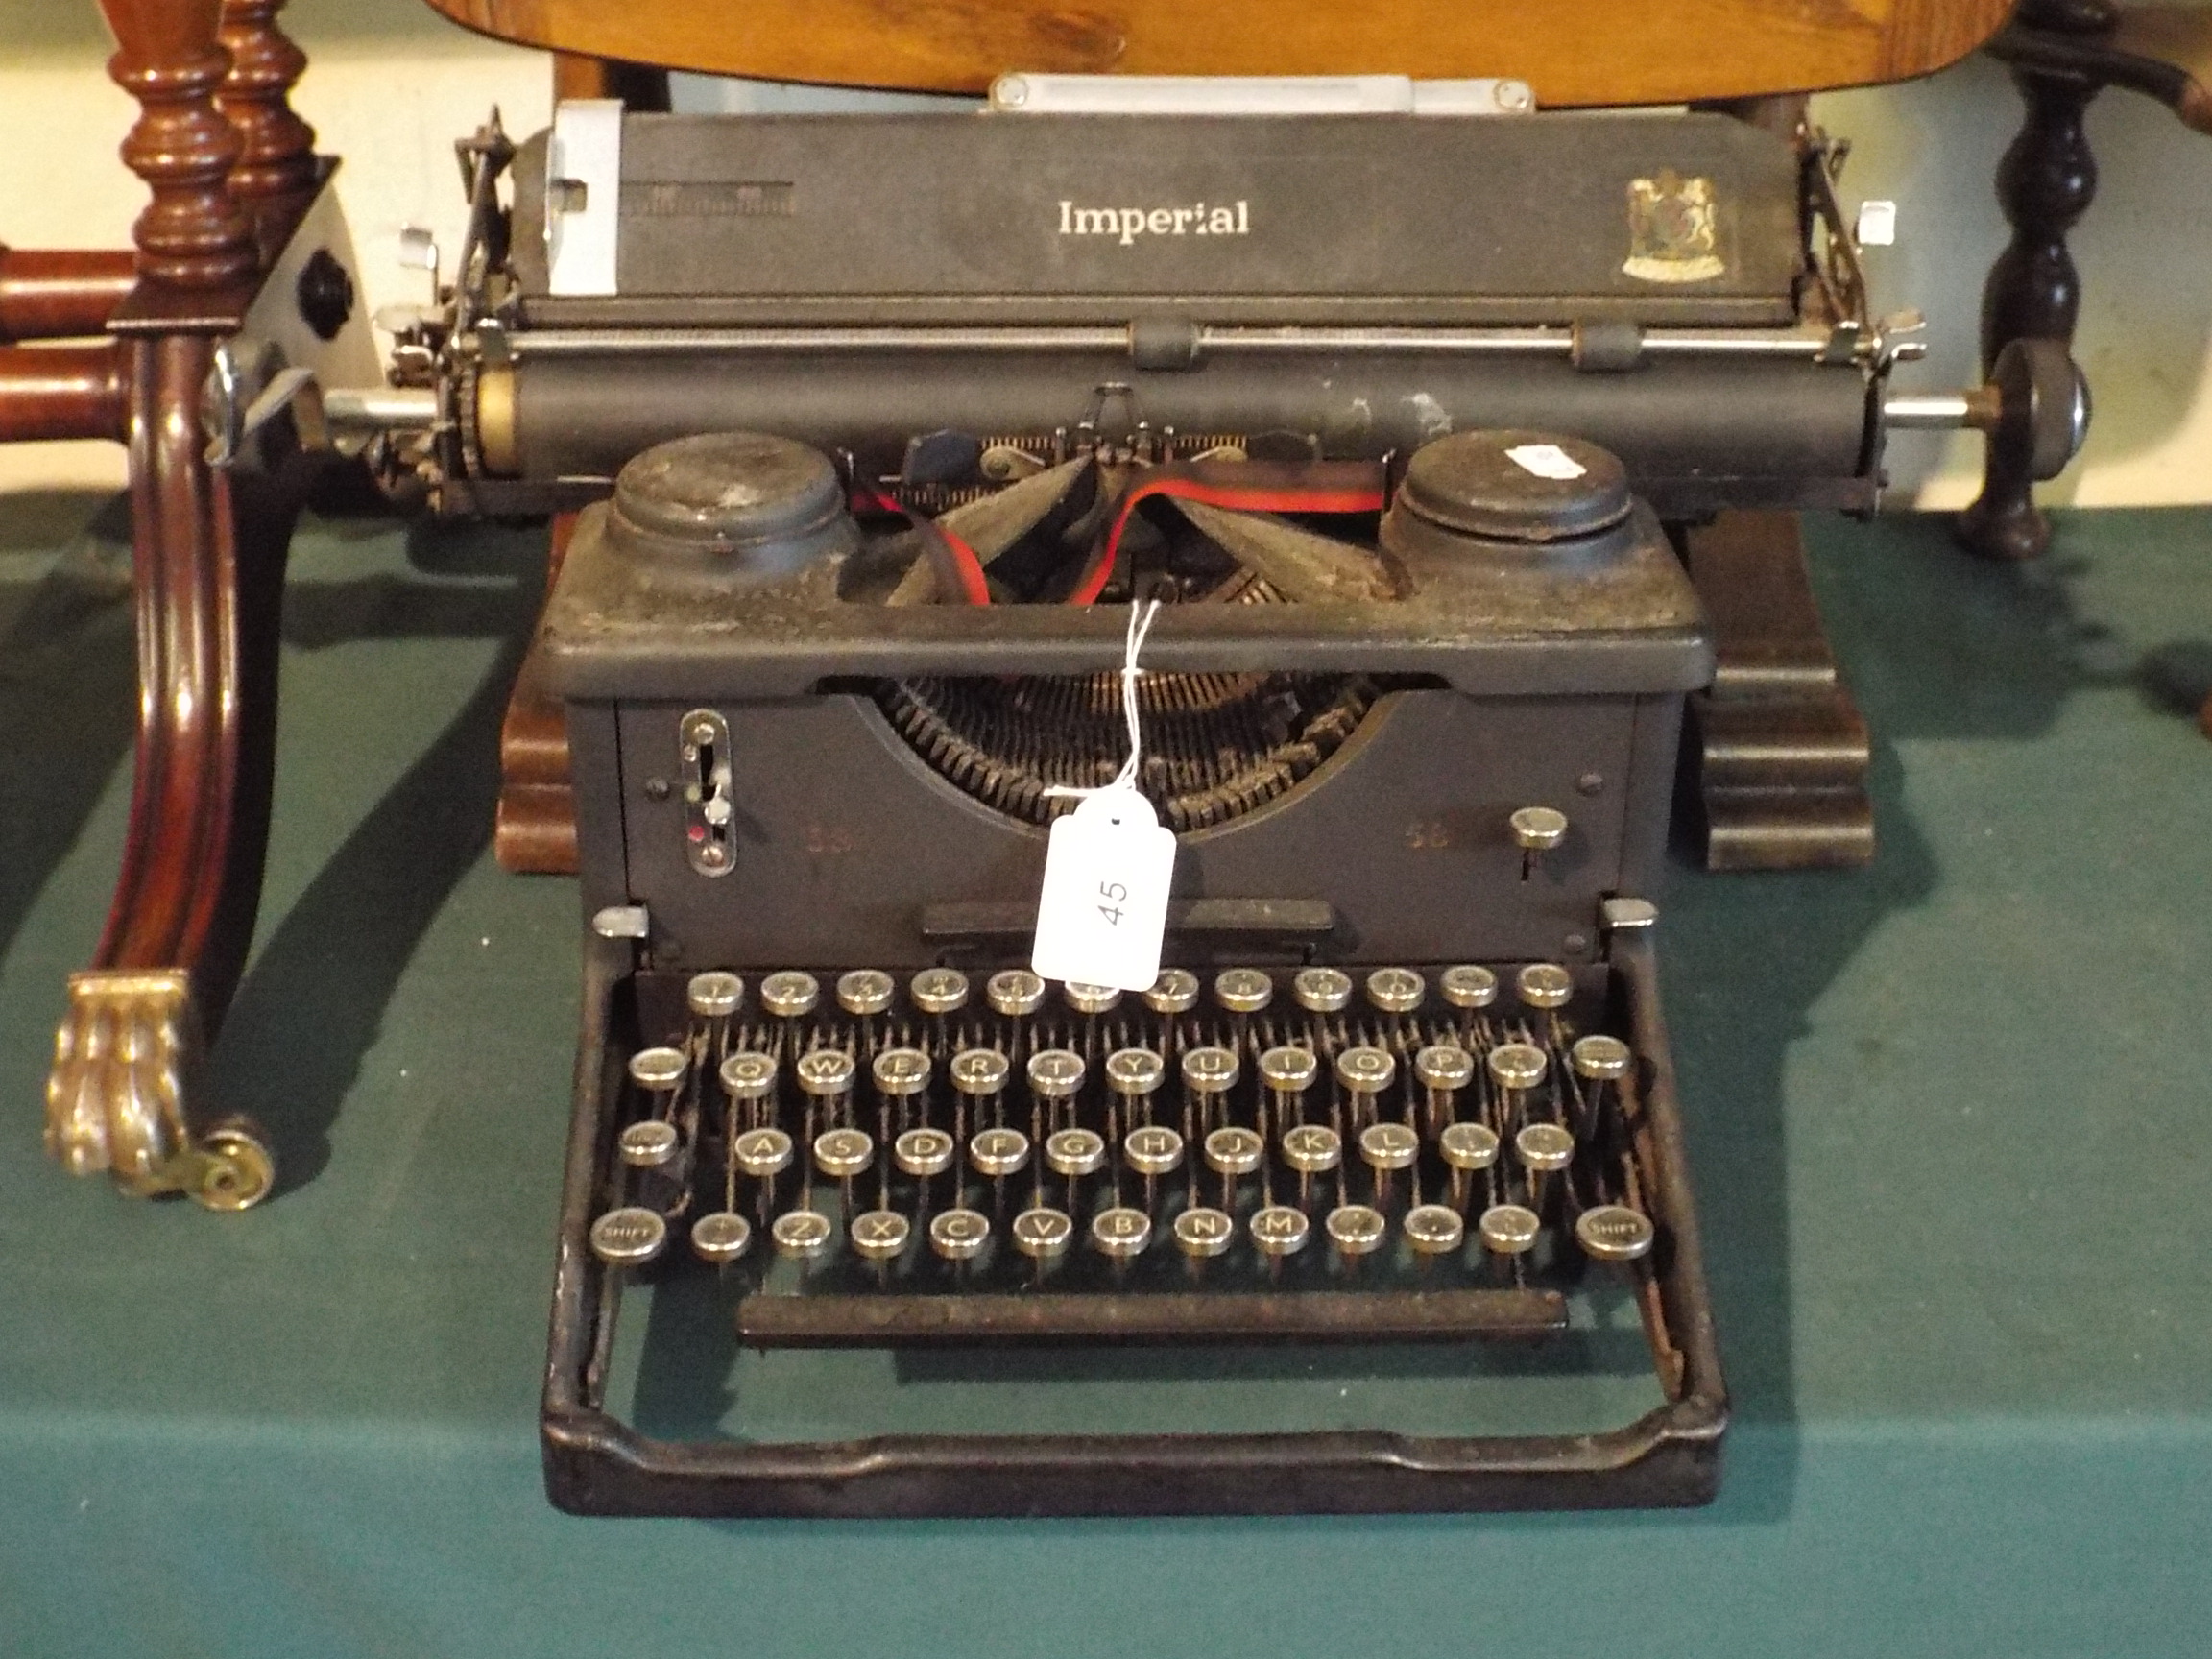 A Vintage Imperial Typewriter